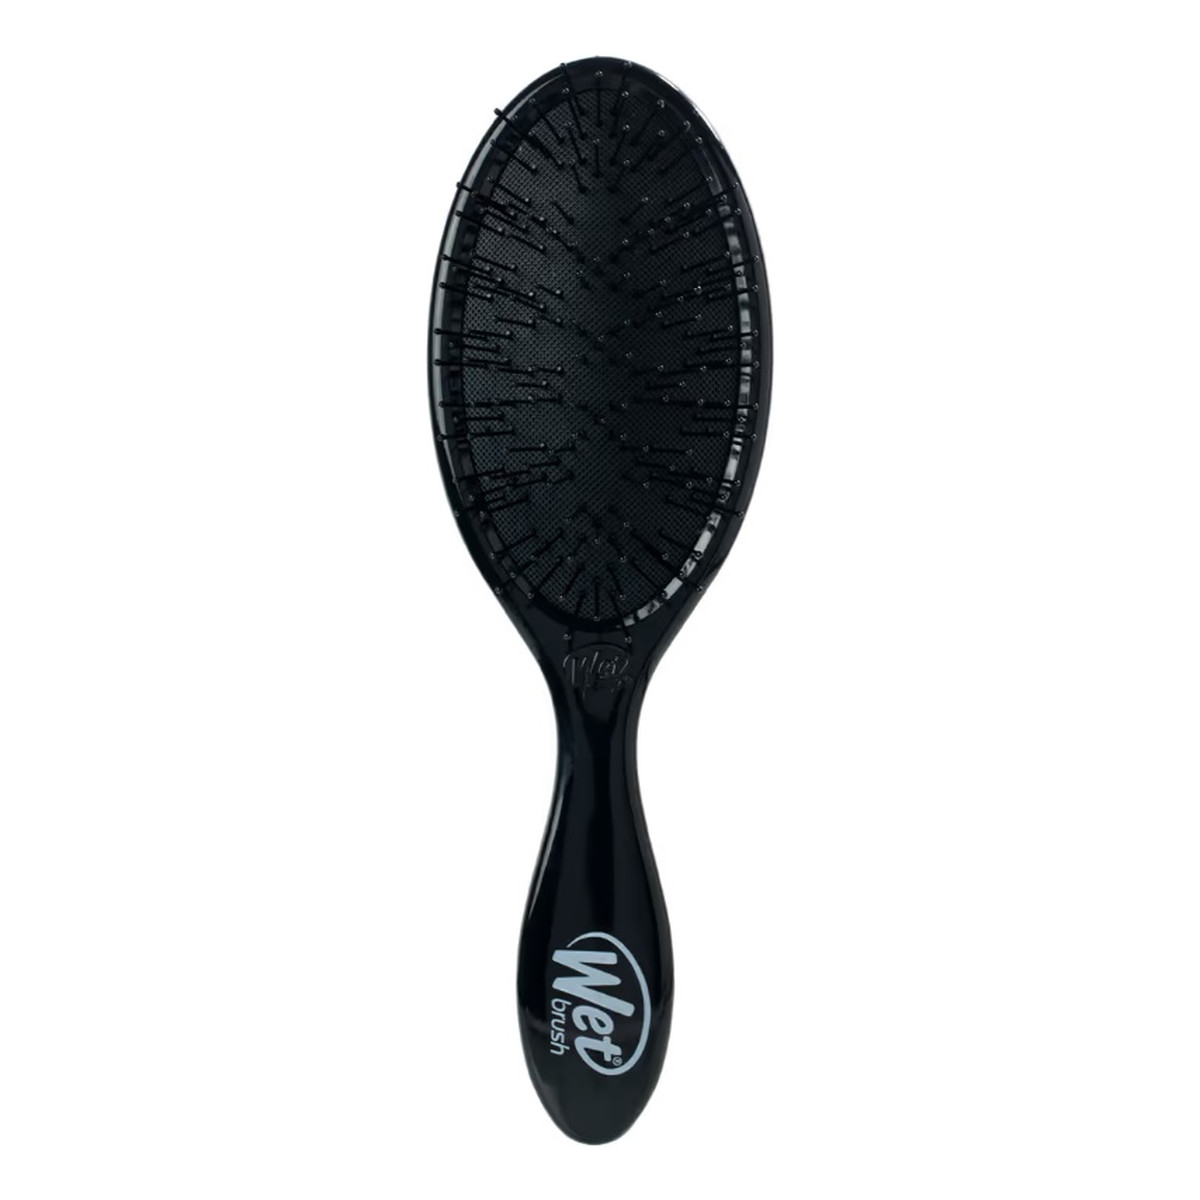 Wet Brush Thick Hair Pro Detangler szczotka do włosów Black